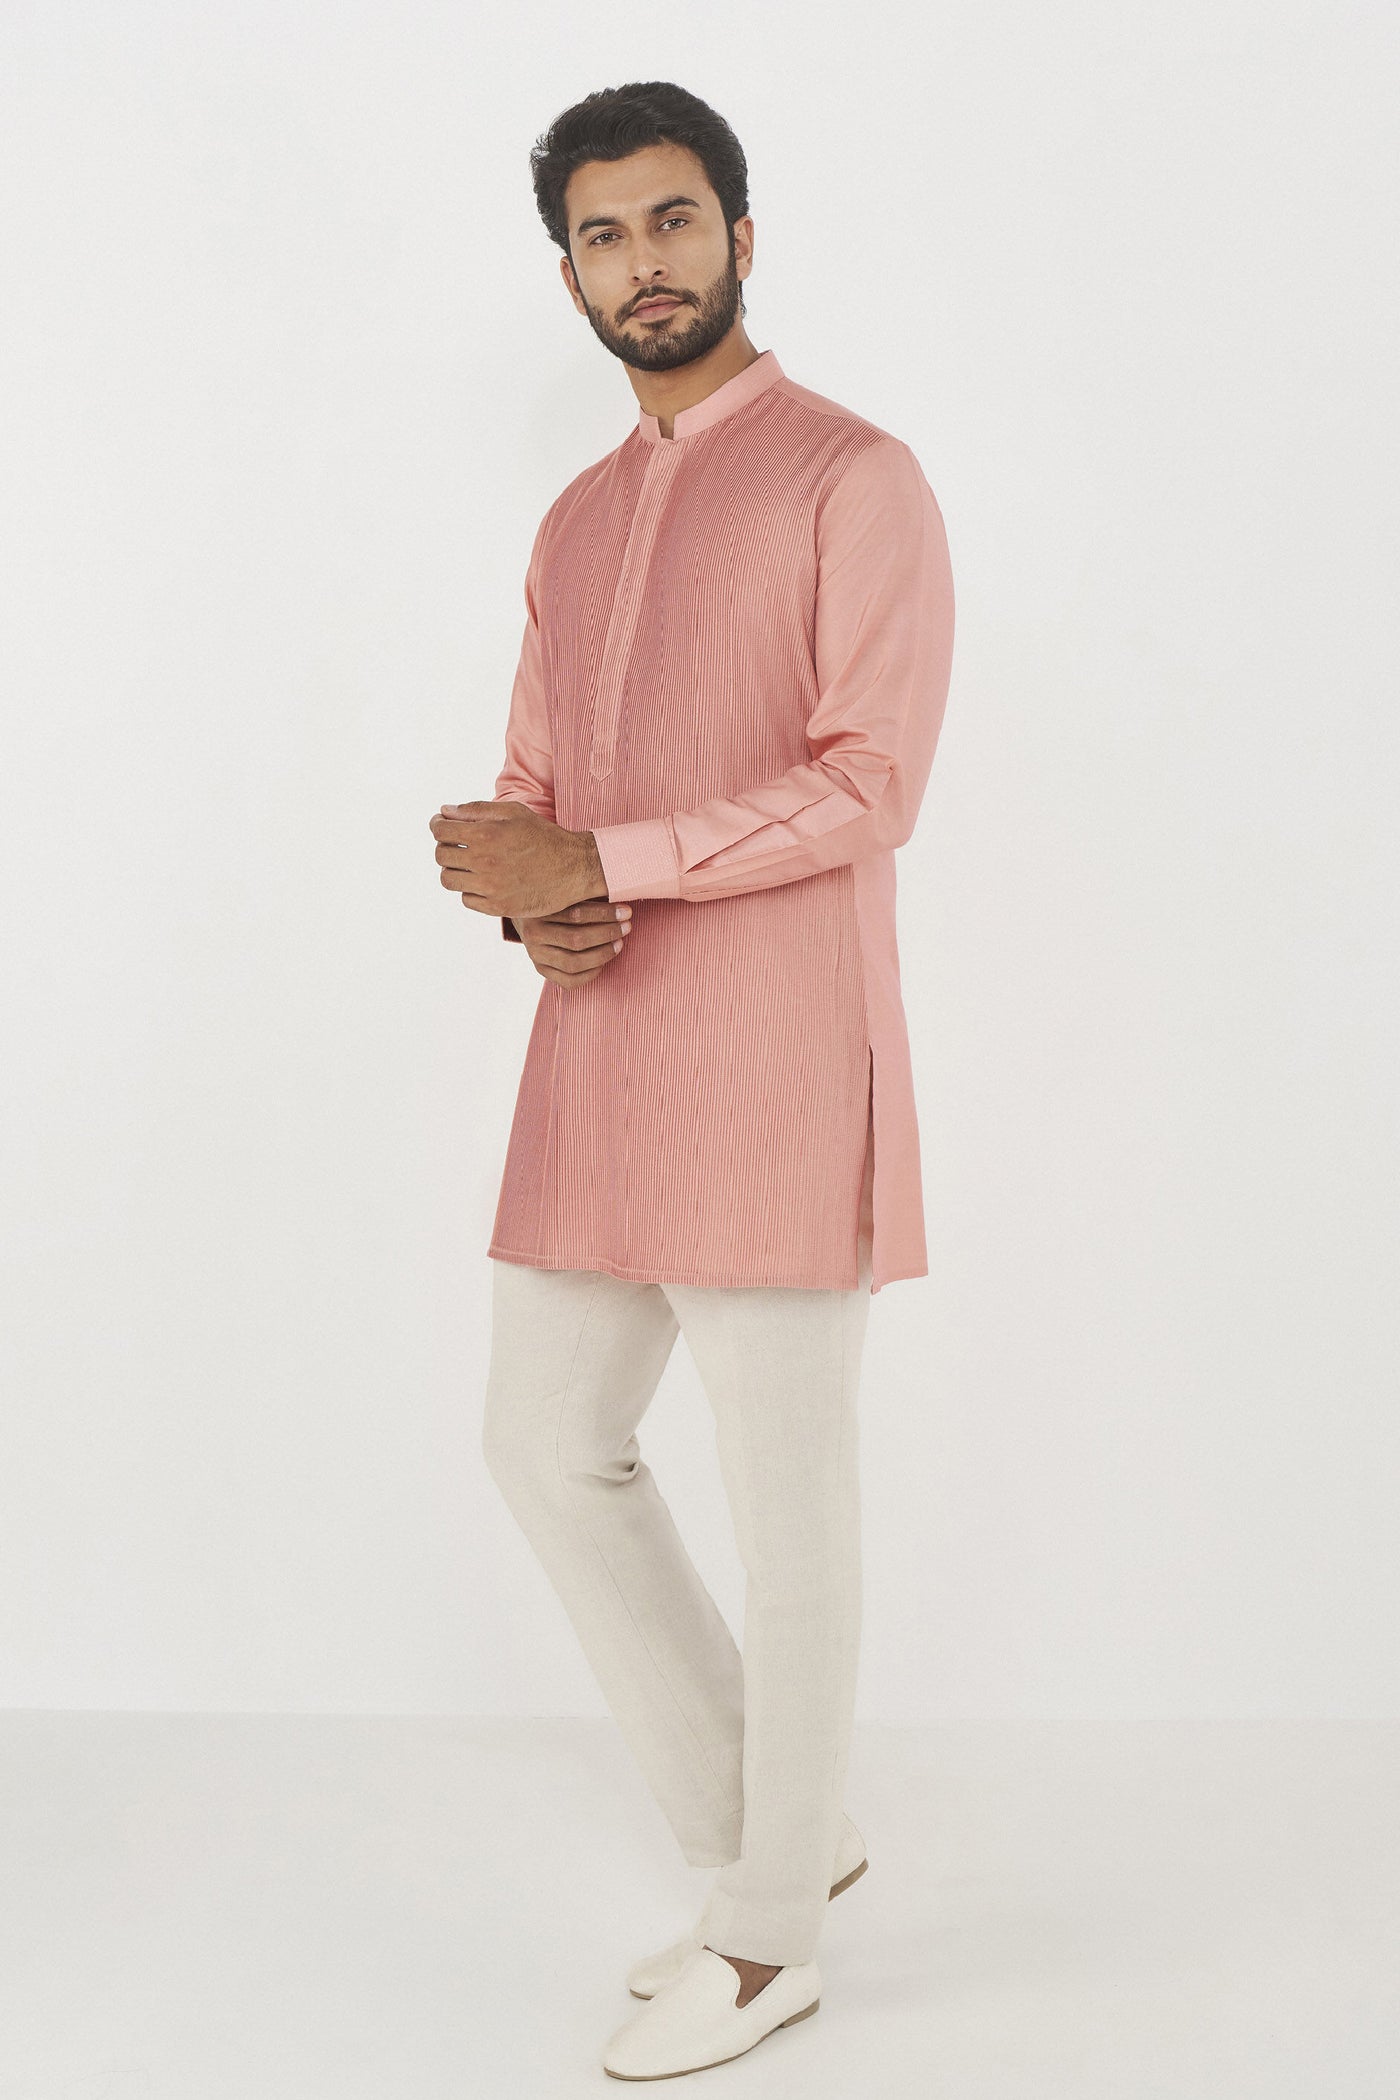 Anita Dongre Menswear Daksh Kurta Pink Indian designer wear online shopping melange singapore